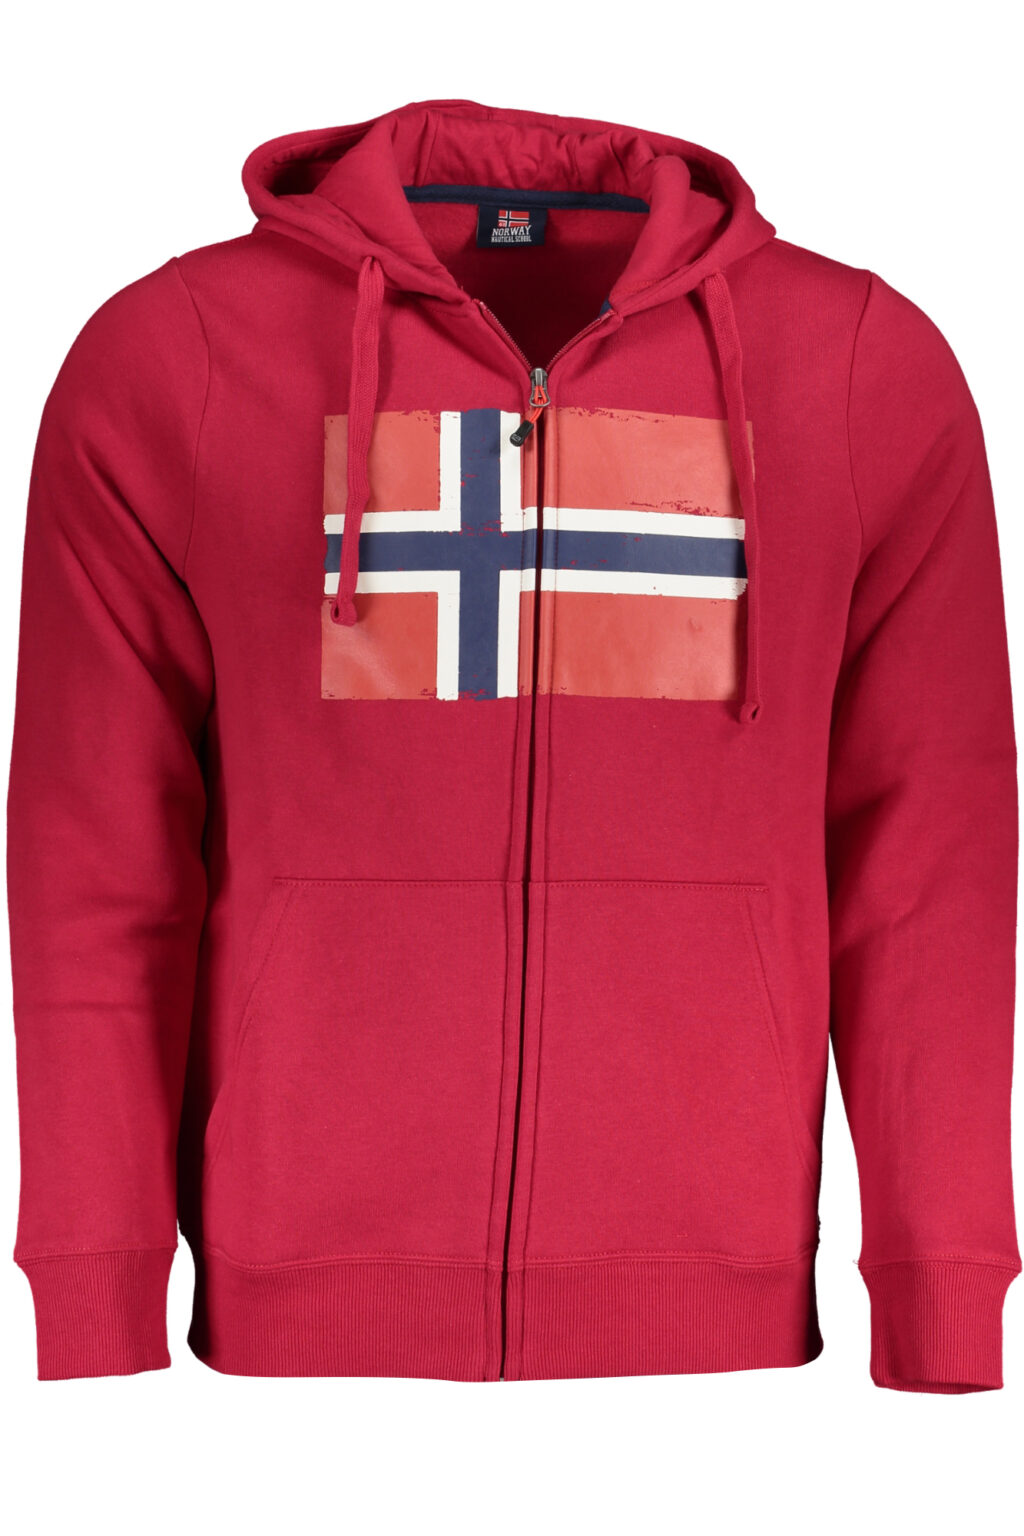 NORWAY 1963 MEN'S RED ZIP SWEATSHIRT 129444_ROBORDEAUX